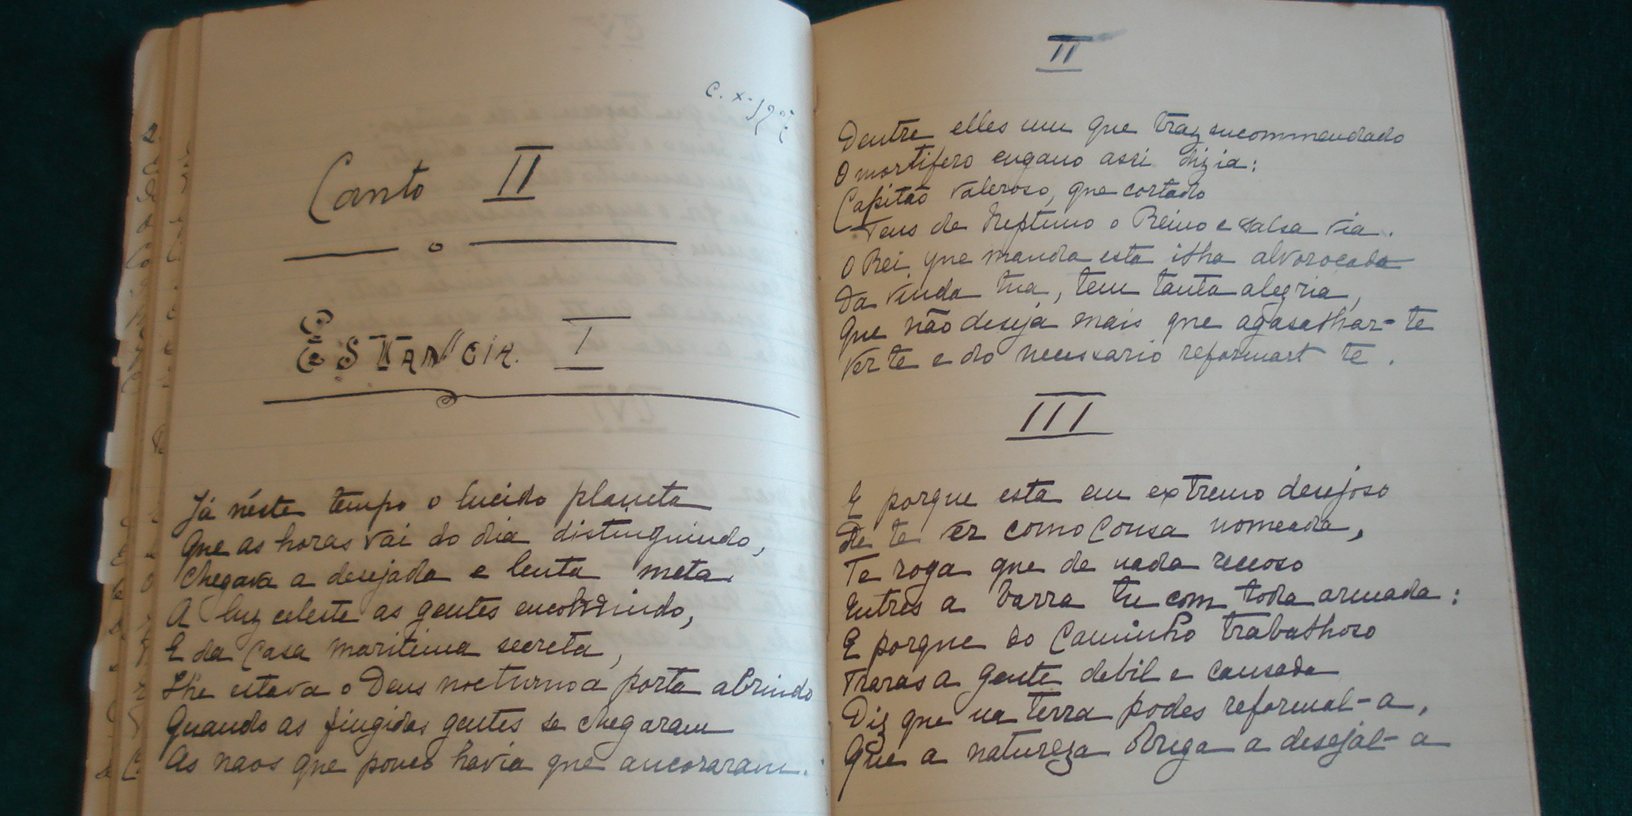 Uma imagem de um dos vários cadernos escolares do então infante D. Manuel, futuro rei D. Manuel II, com excertos de “Os Lusíadas” escritos pela sua mão.